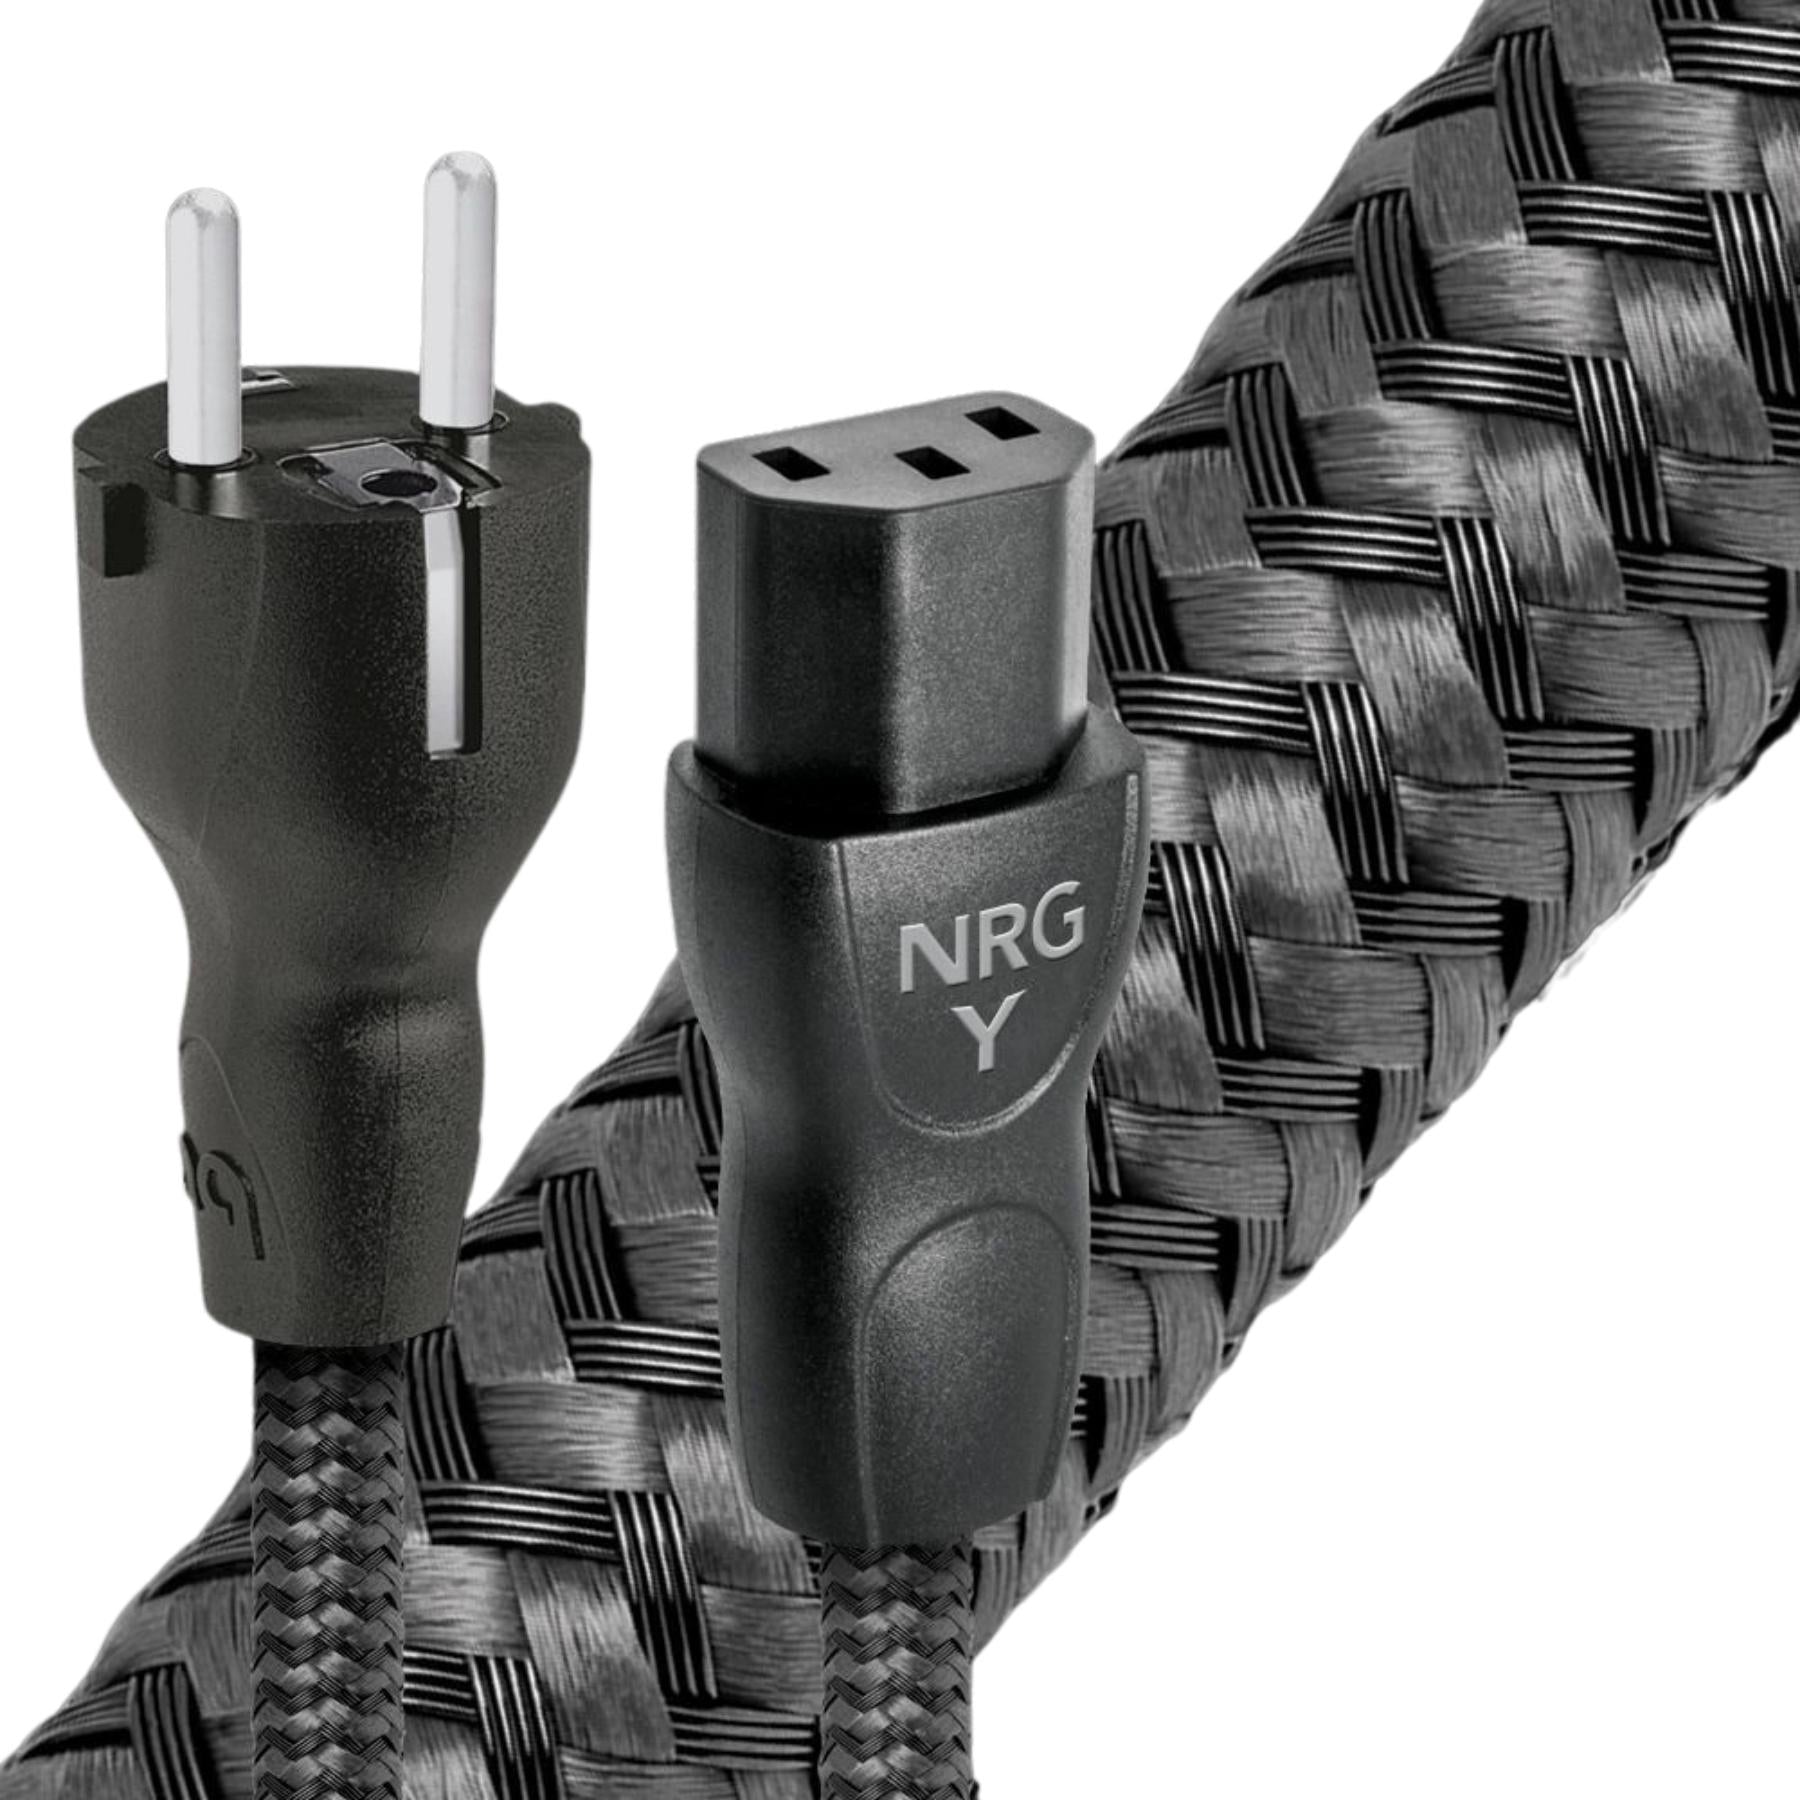 Cable de Poder NRG-Y3 EU-C13 LGC Audioquest